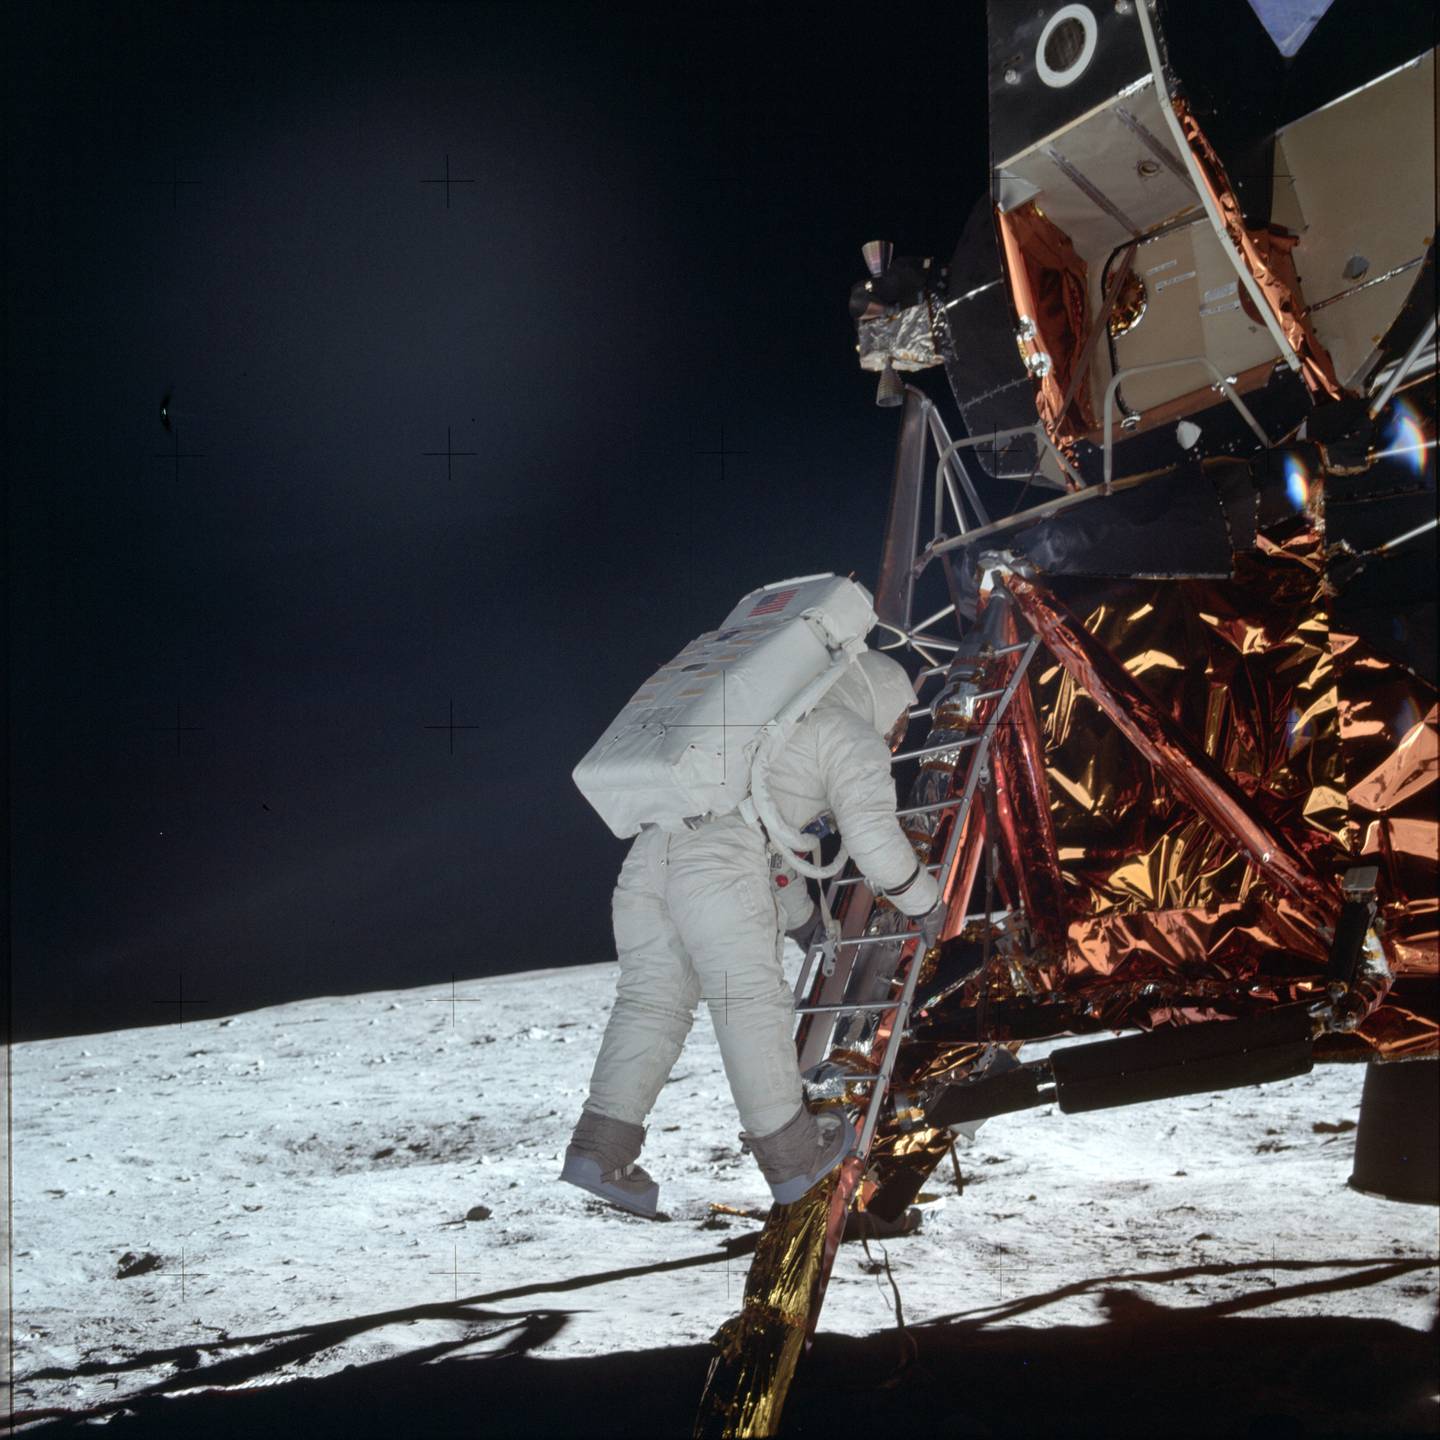 Misión a la Luna Apolo 11 cumple 50 años